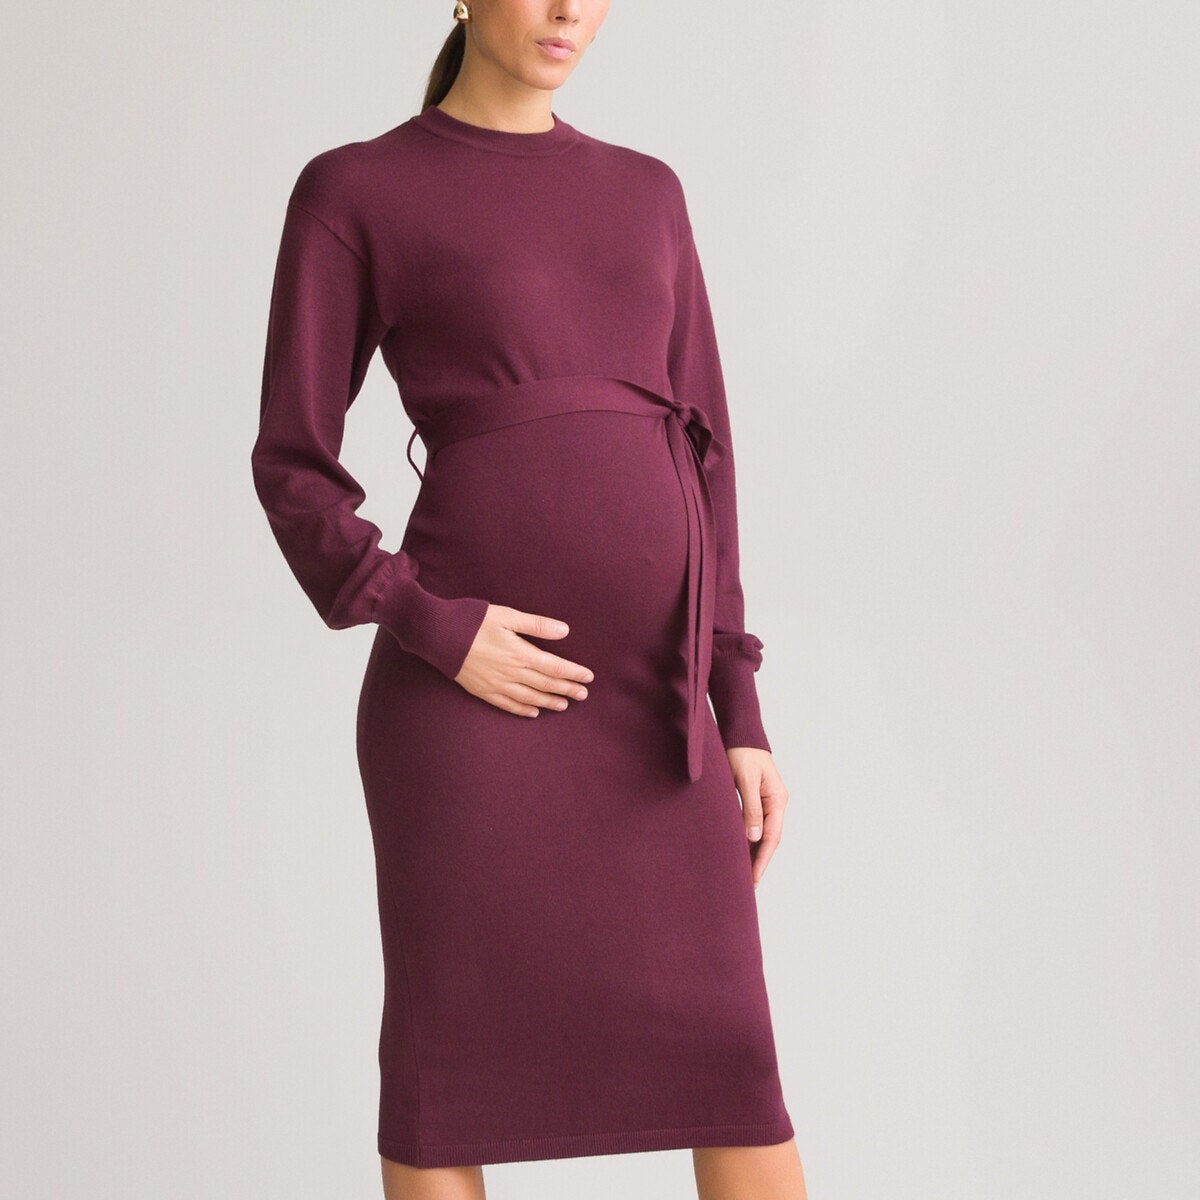 Μακρυμάνικο φόρεμα εγκυμοσύνης με πλεκτή ύφανση